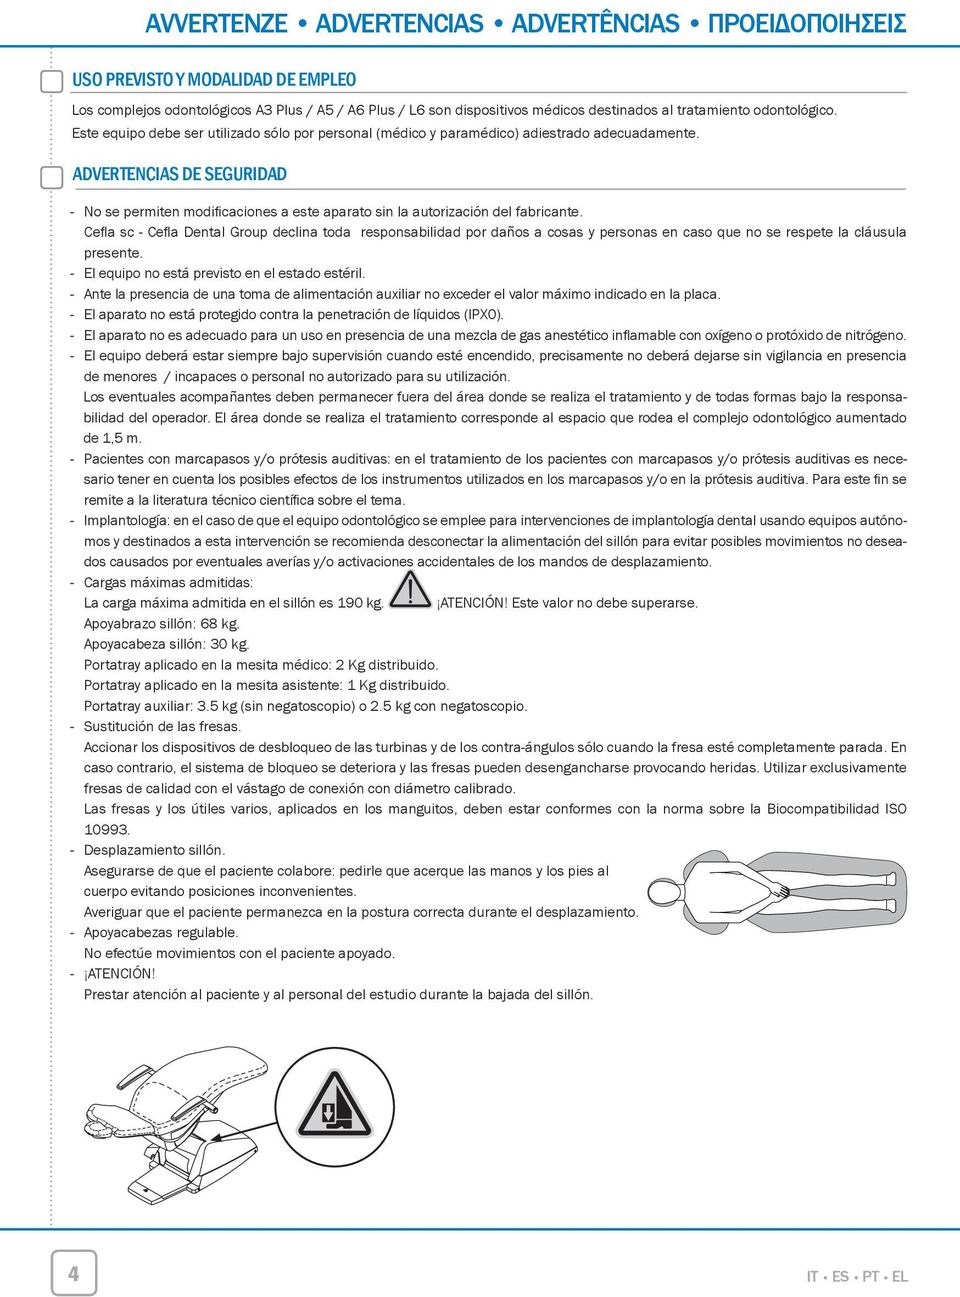 ADVERTENCIAS DE SEGURIDAD - No se permiten modificaciones a este aparato sin la autorización del fabricante.